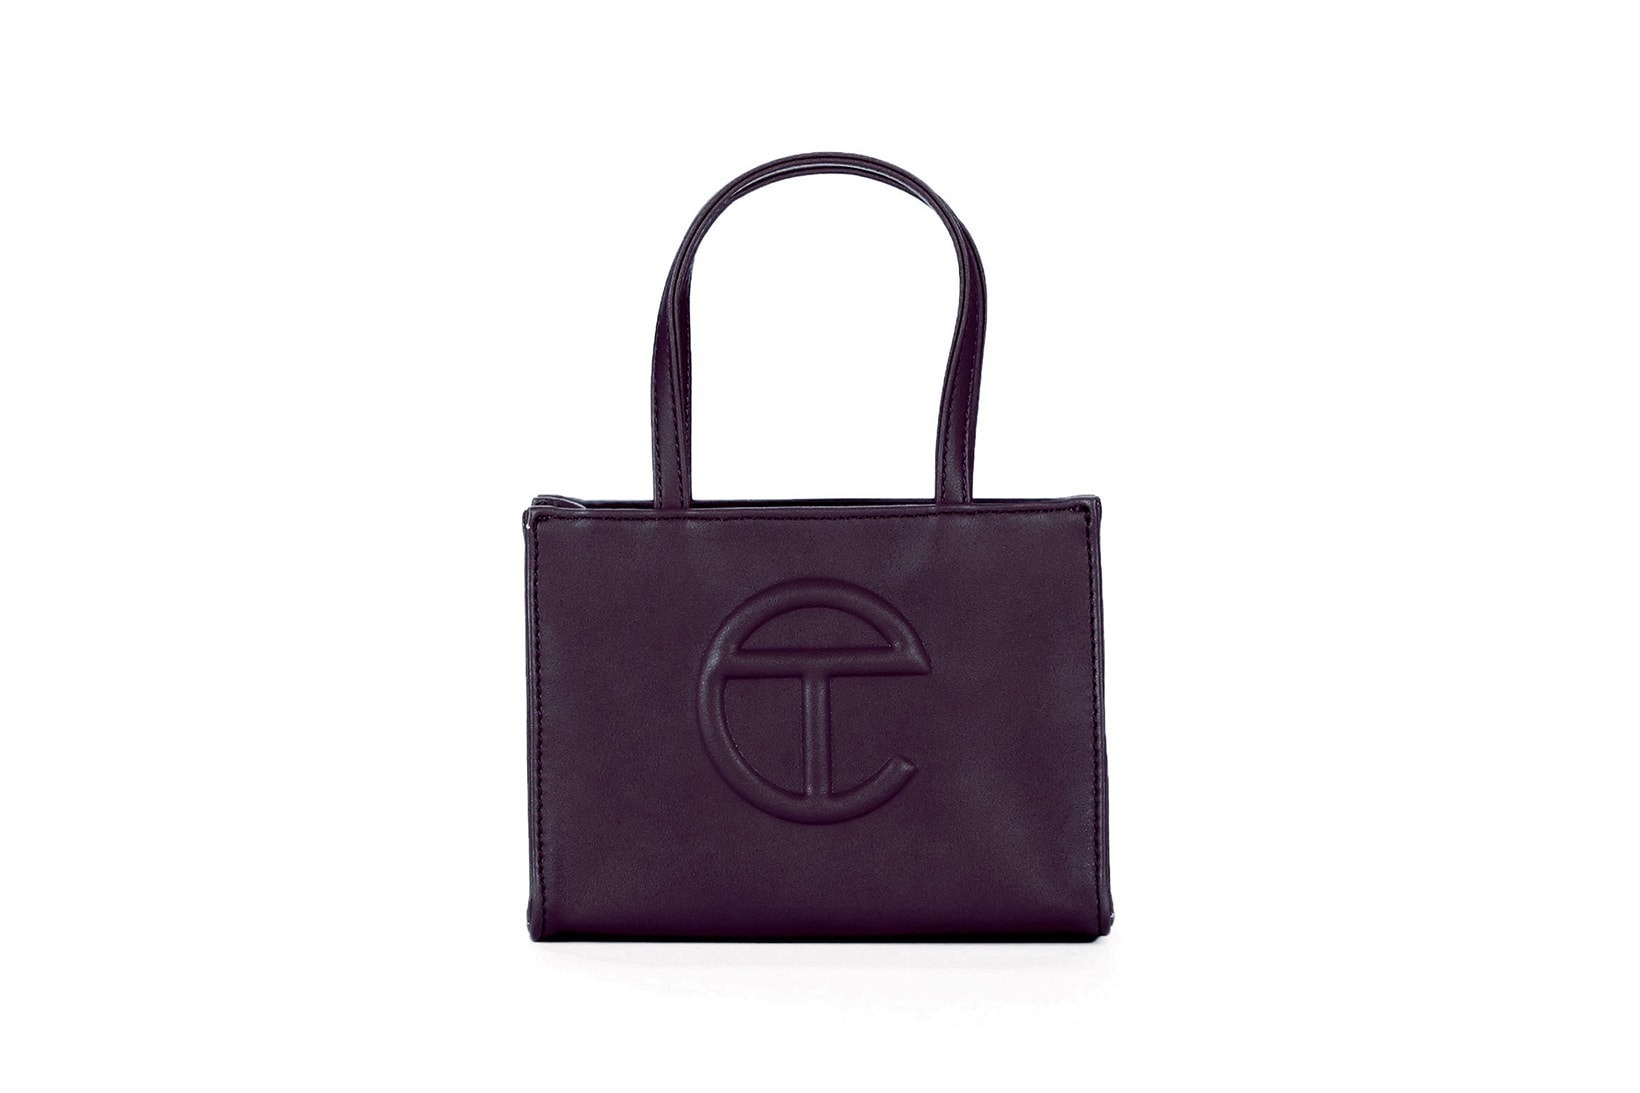 Telfar Shopping Bag in New 